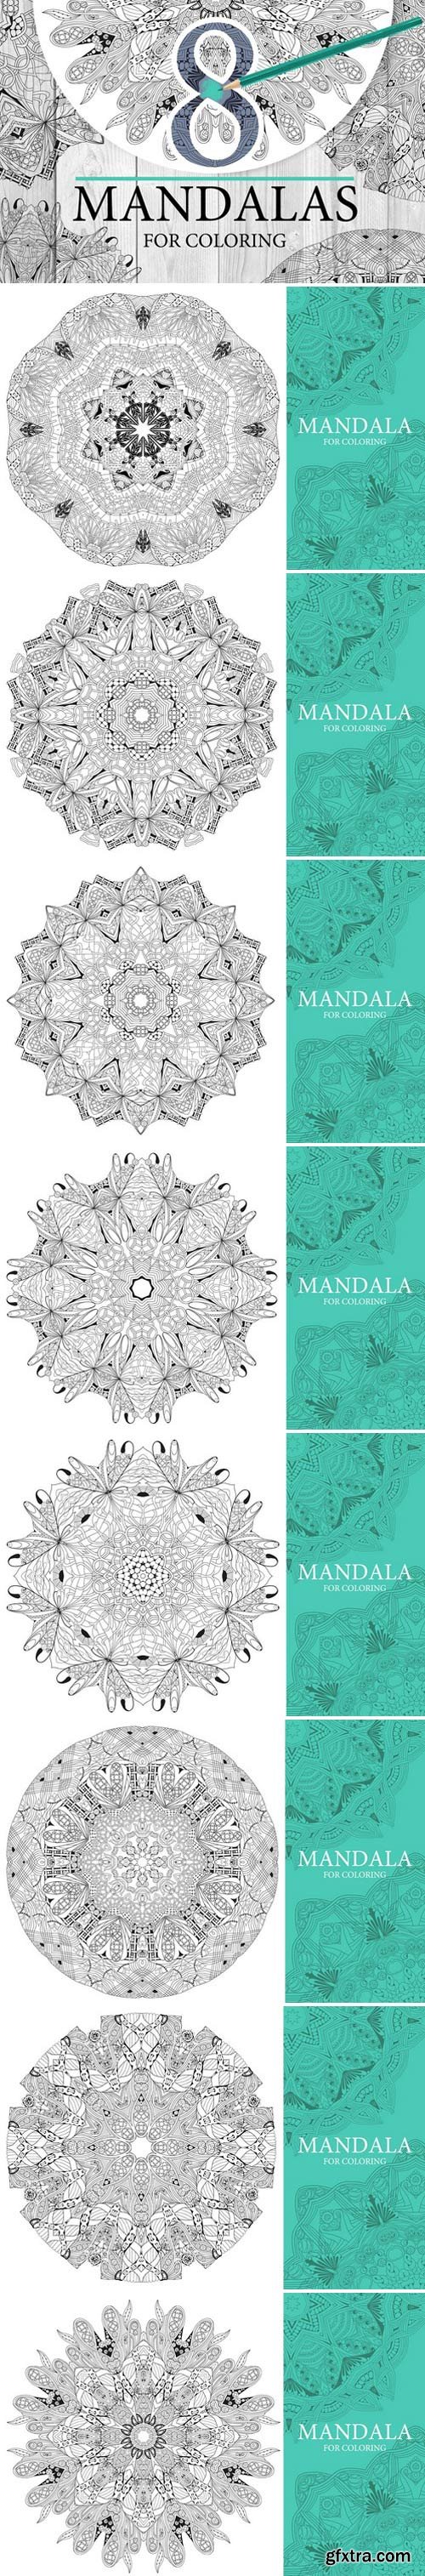 CM - Mandalas for coloring2 2025266